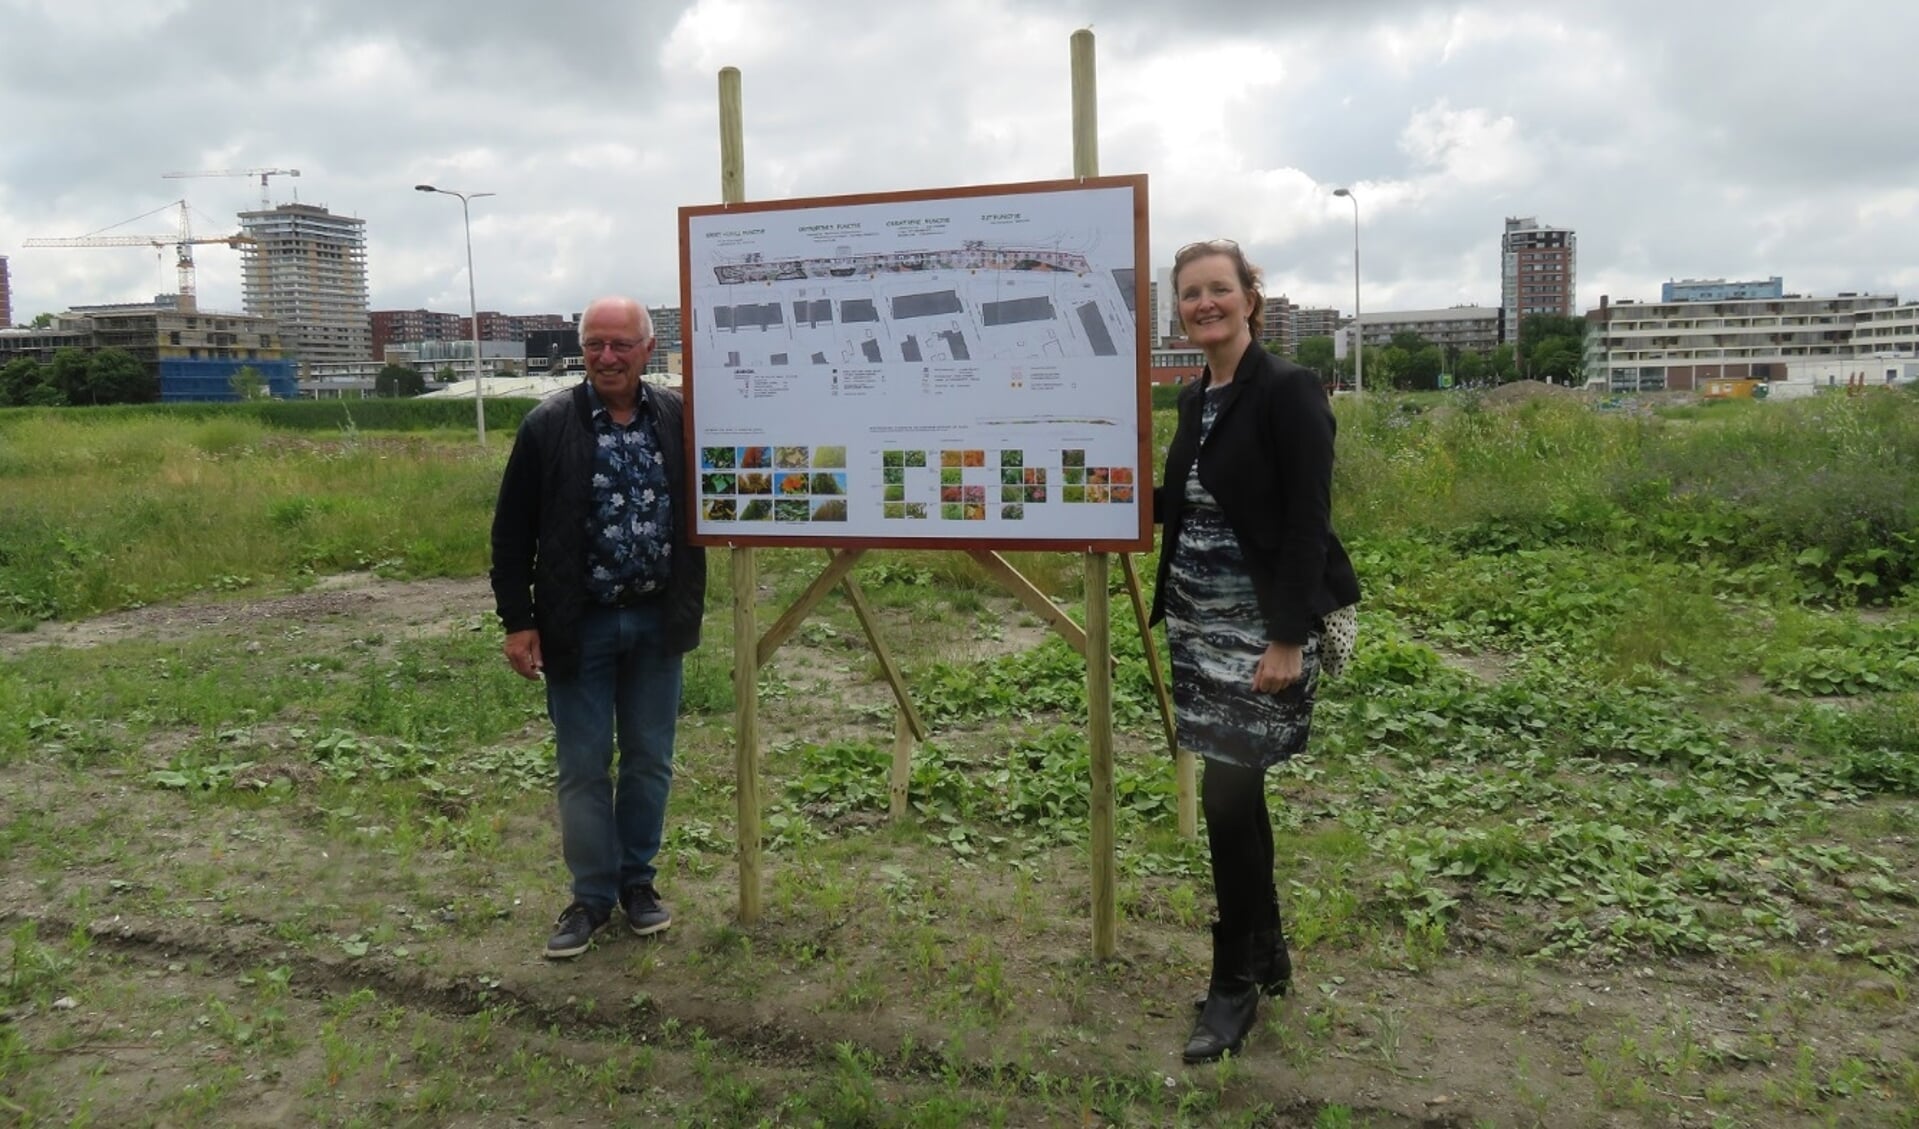 Frans Postma, namens buurtvereniging Delftzicht, en wethouder Huijsmans (rechts), tevens buurtbewoner, onthulden samen een bord met ideeën voor de verdere invulling van de parkstrook.